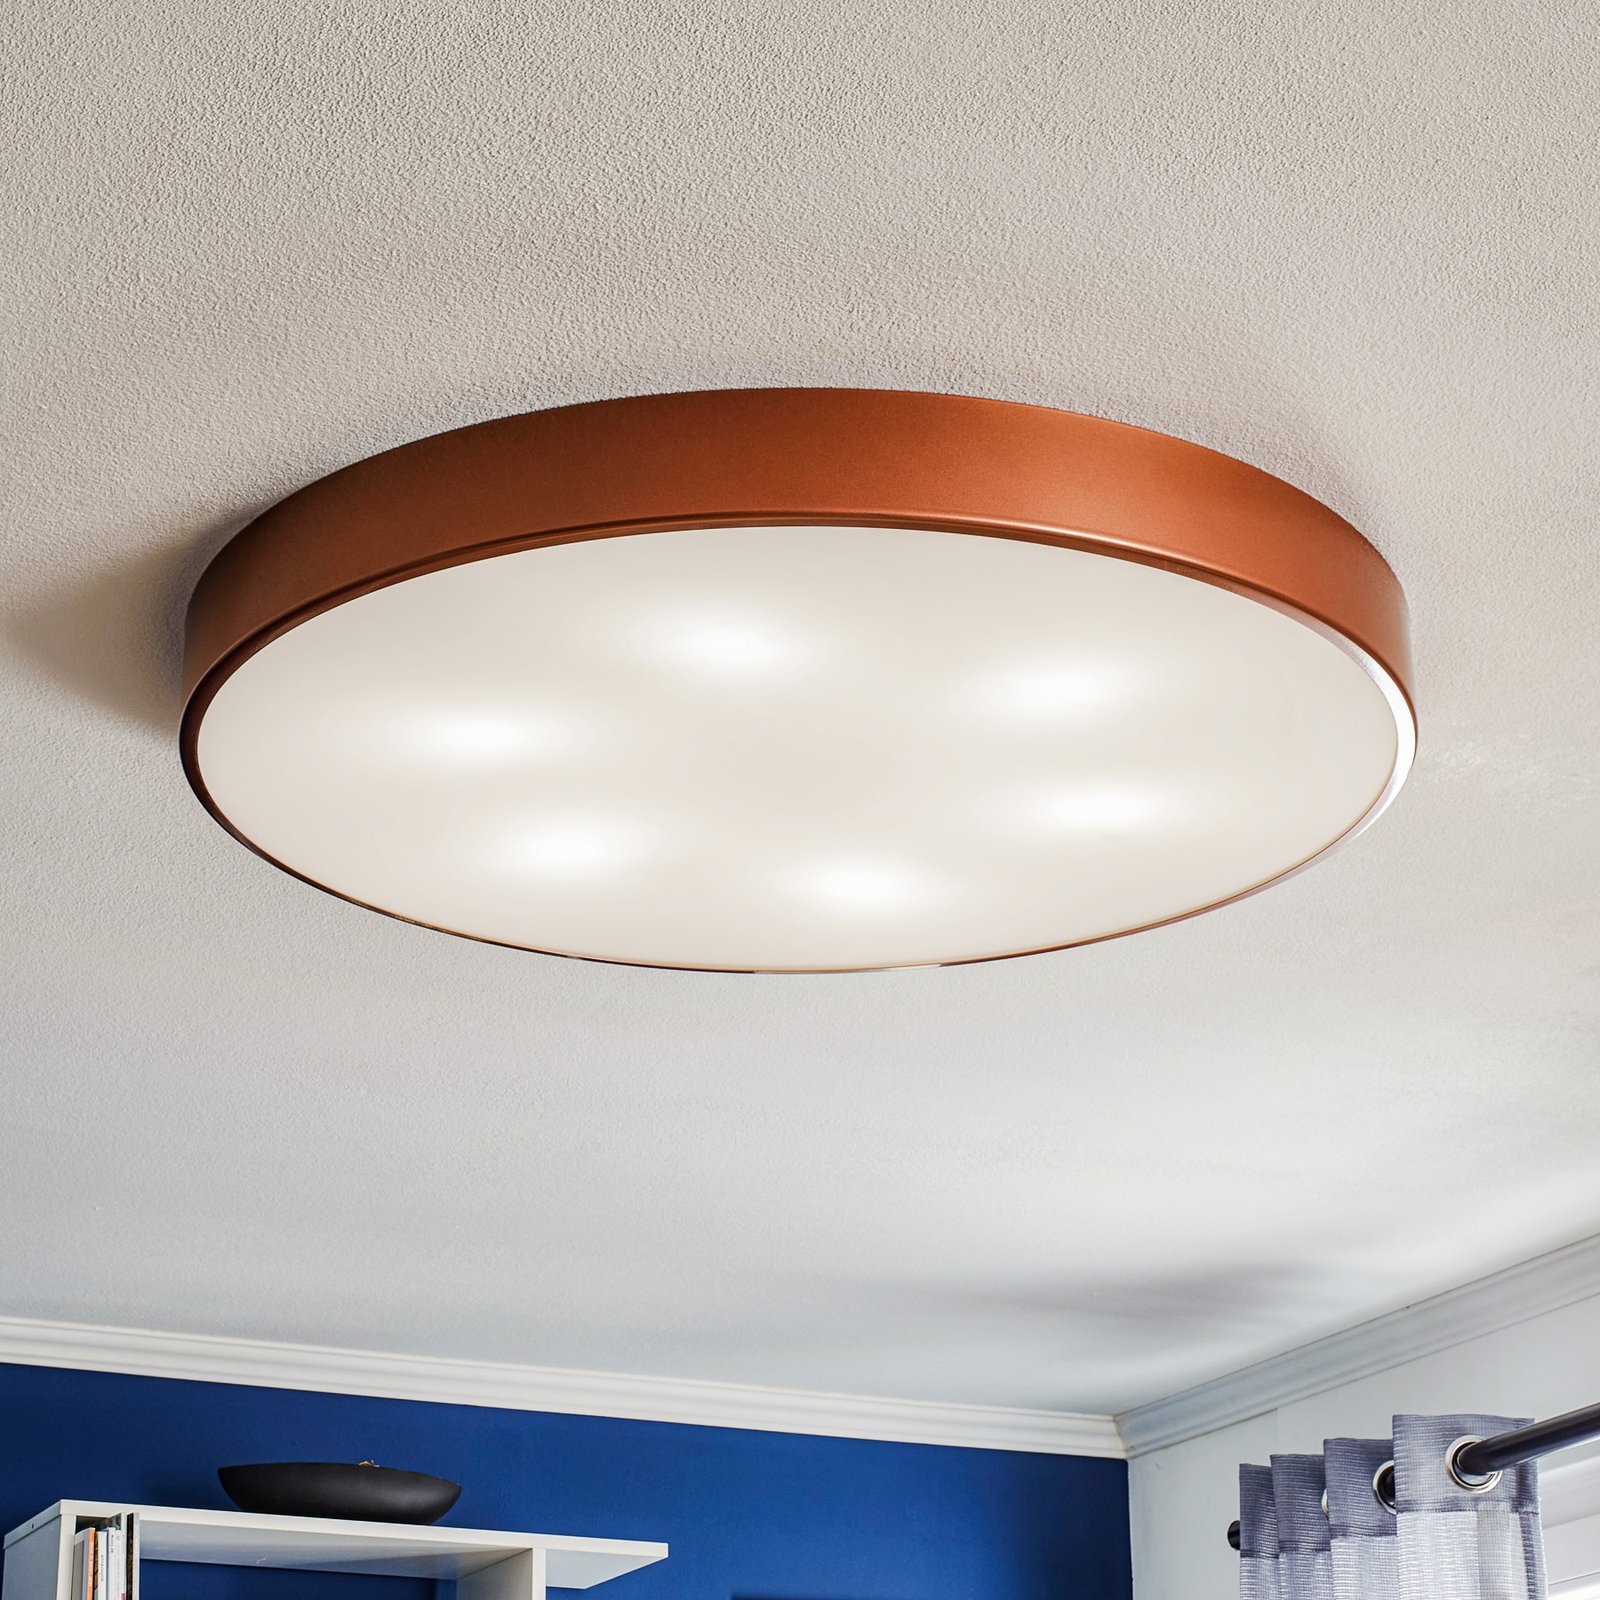 Cleo 800 ceiling light, sensor, Ø 78 cm copper